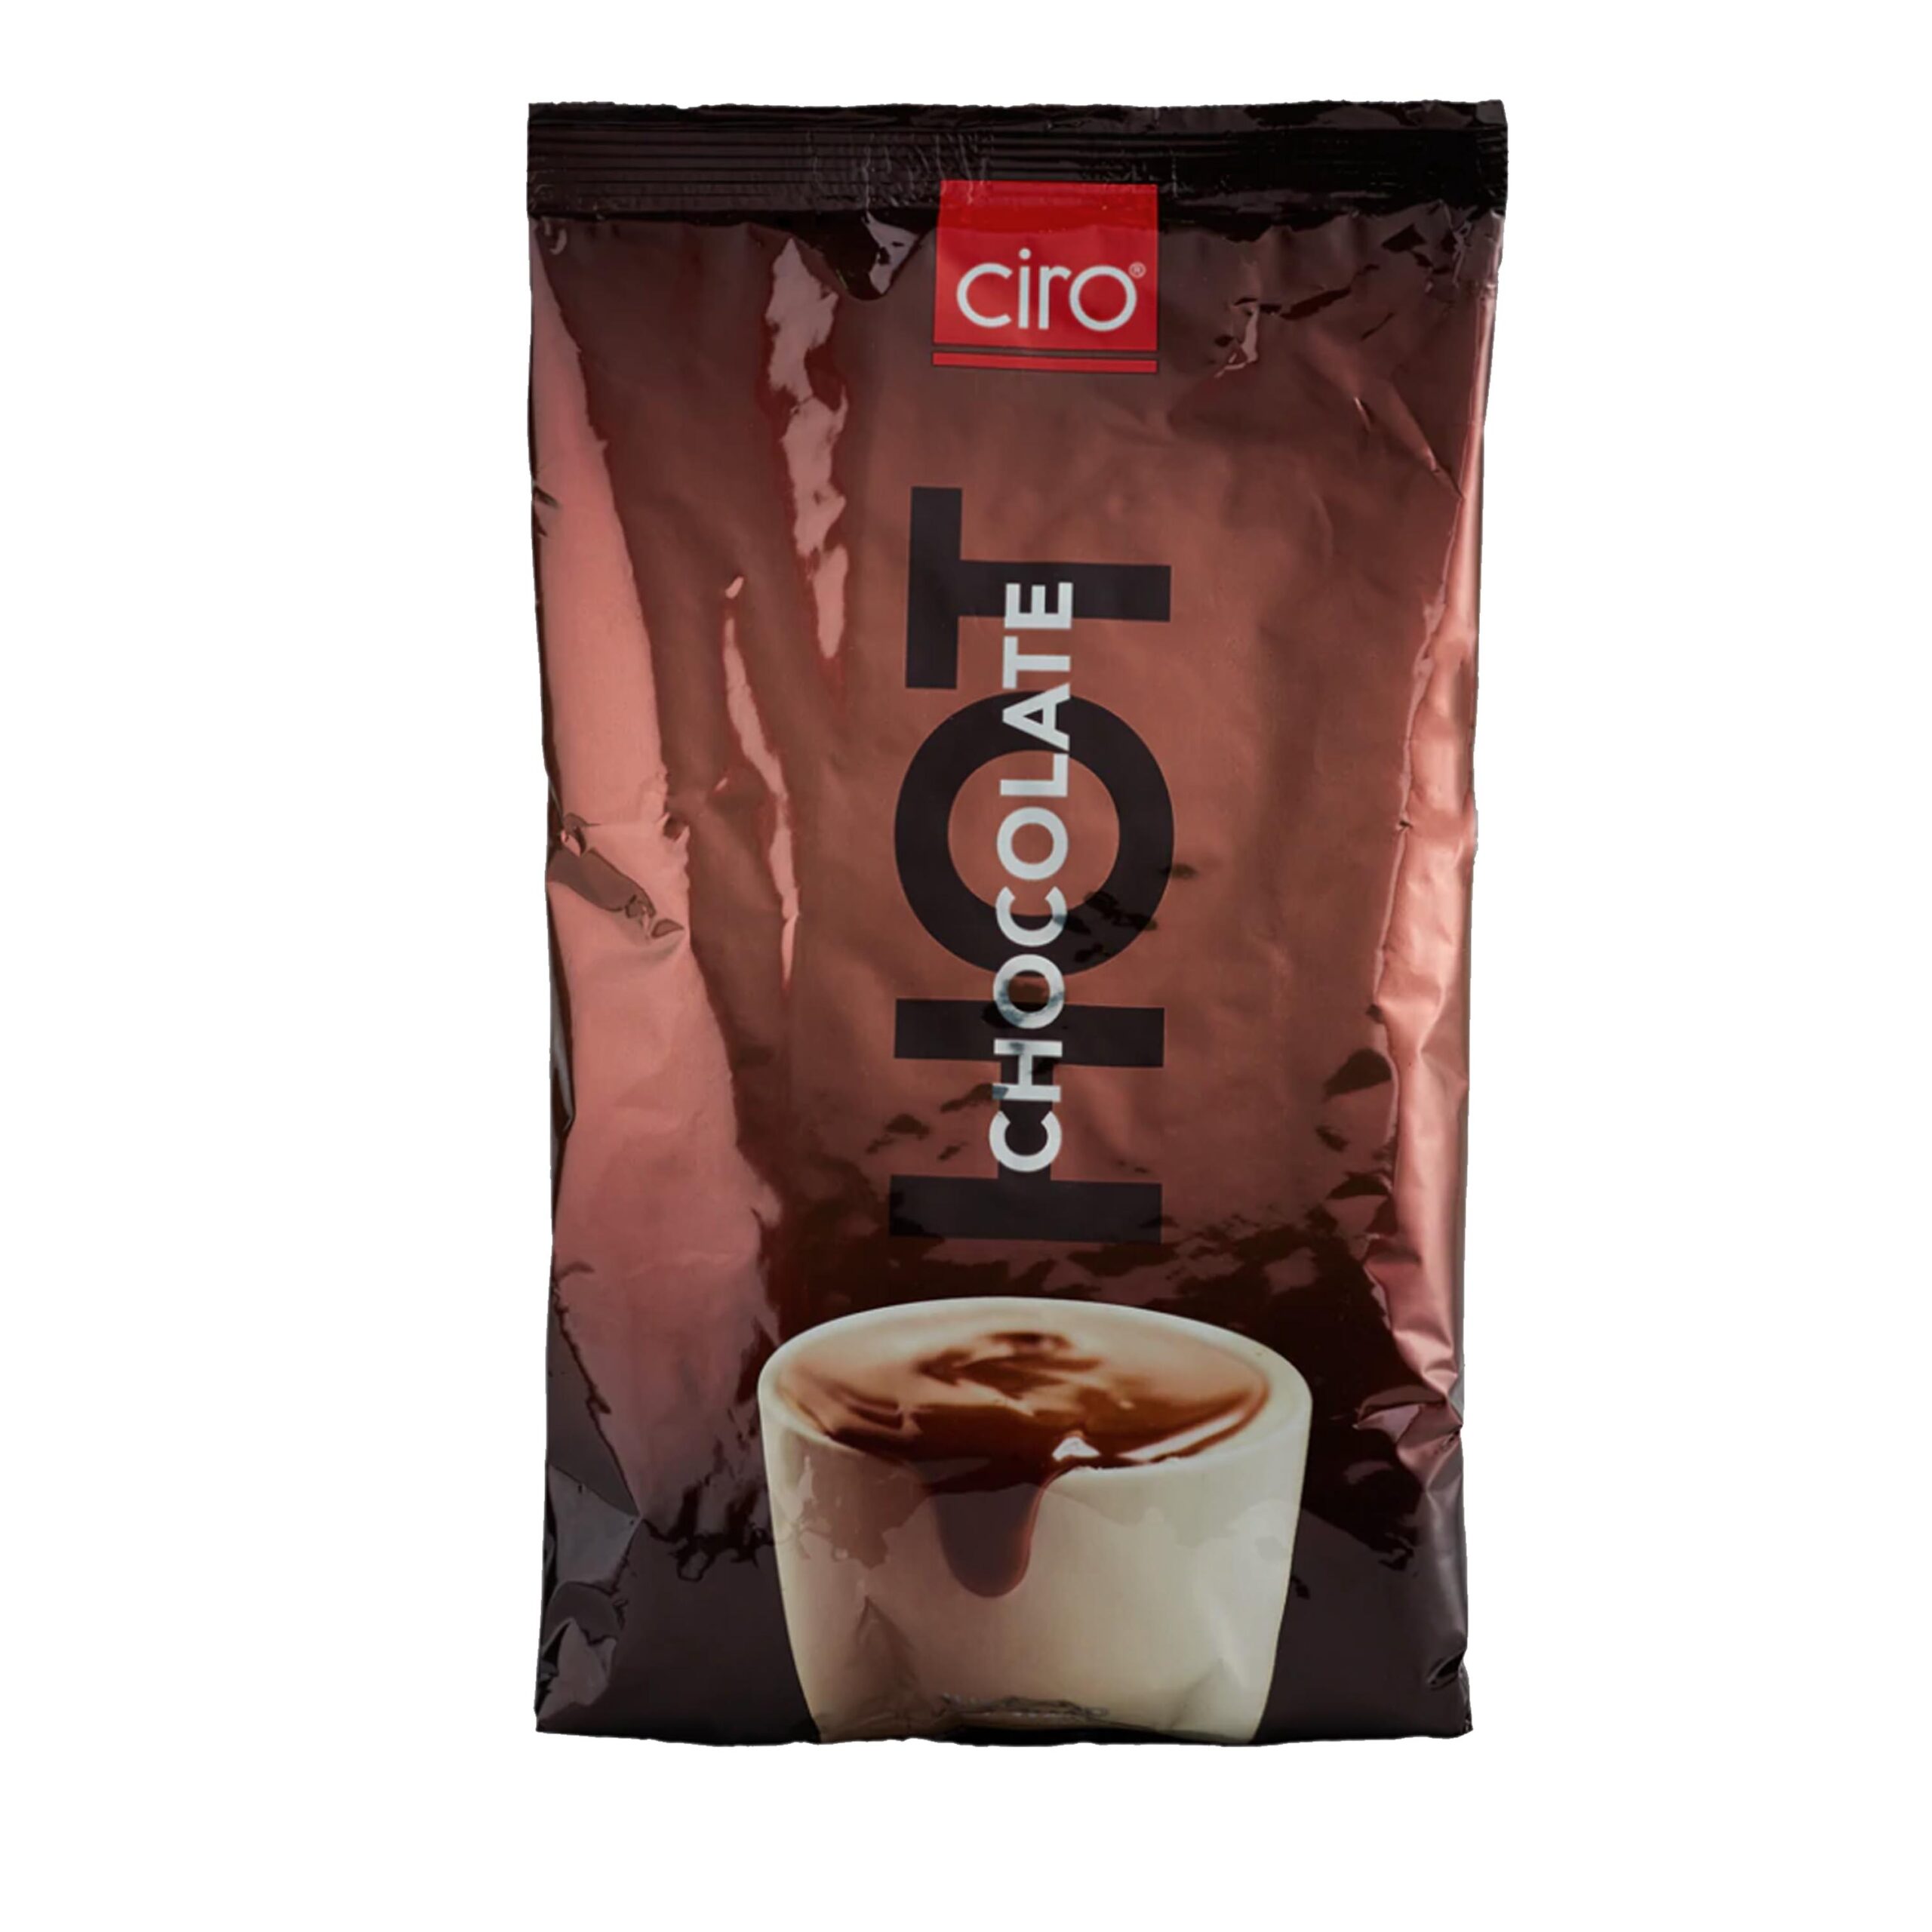 CIRO HOT
CHOCOLATE  500g